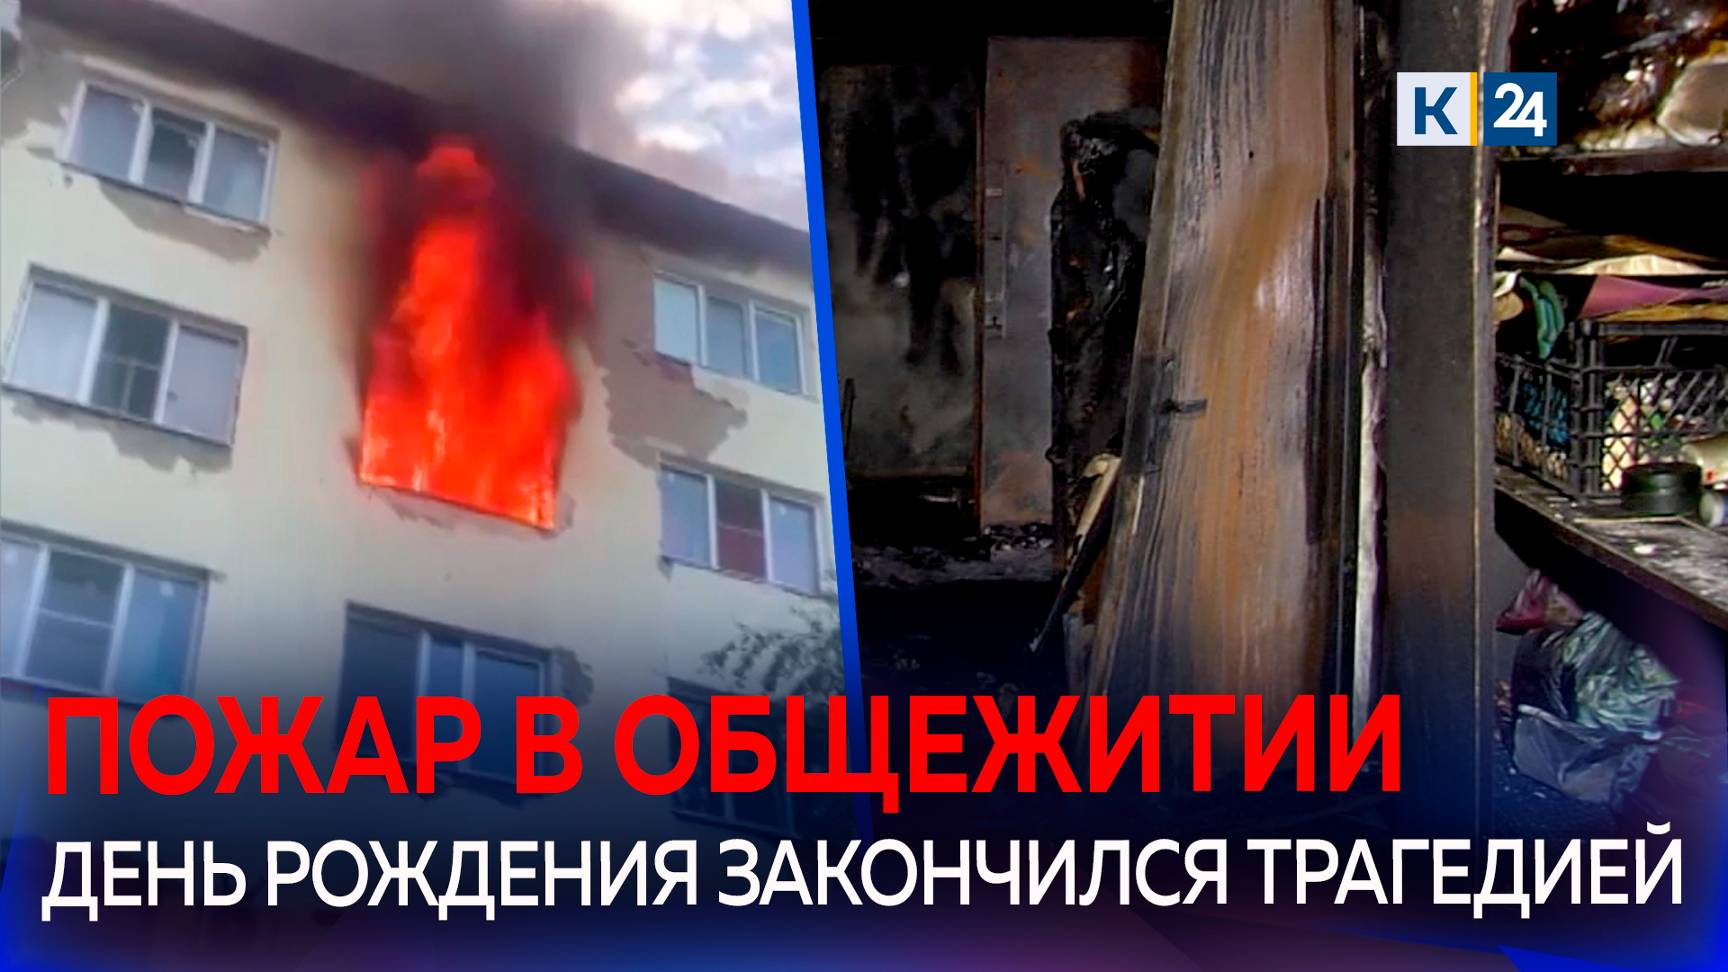 Три человека погибли при пожаре в общежитии на Кубани